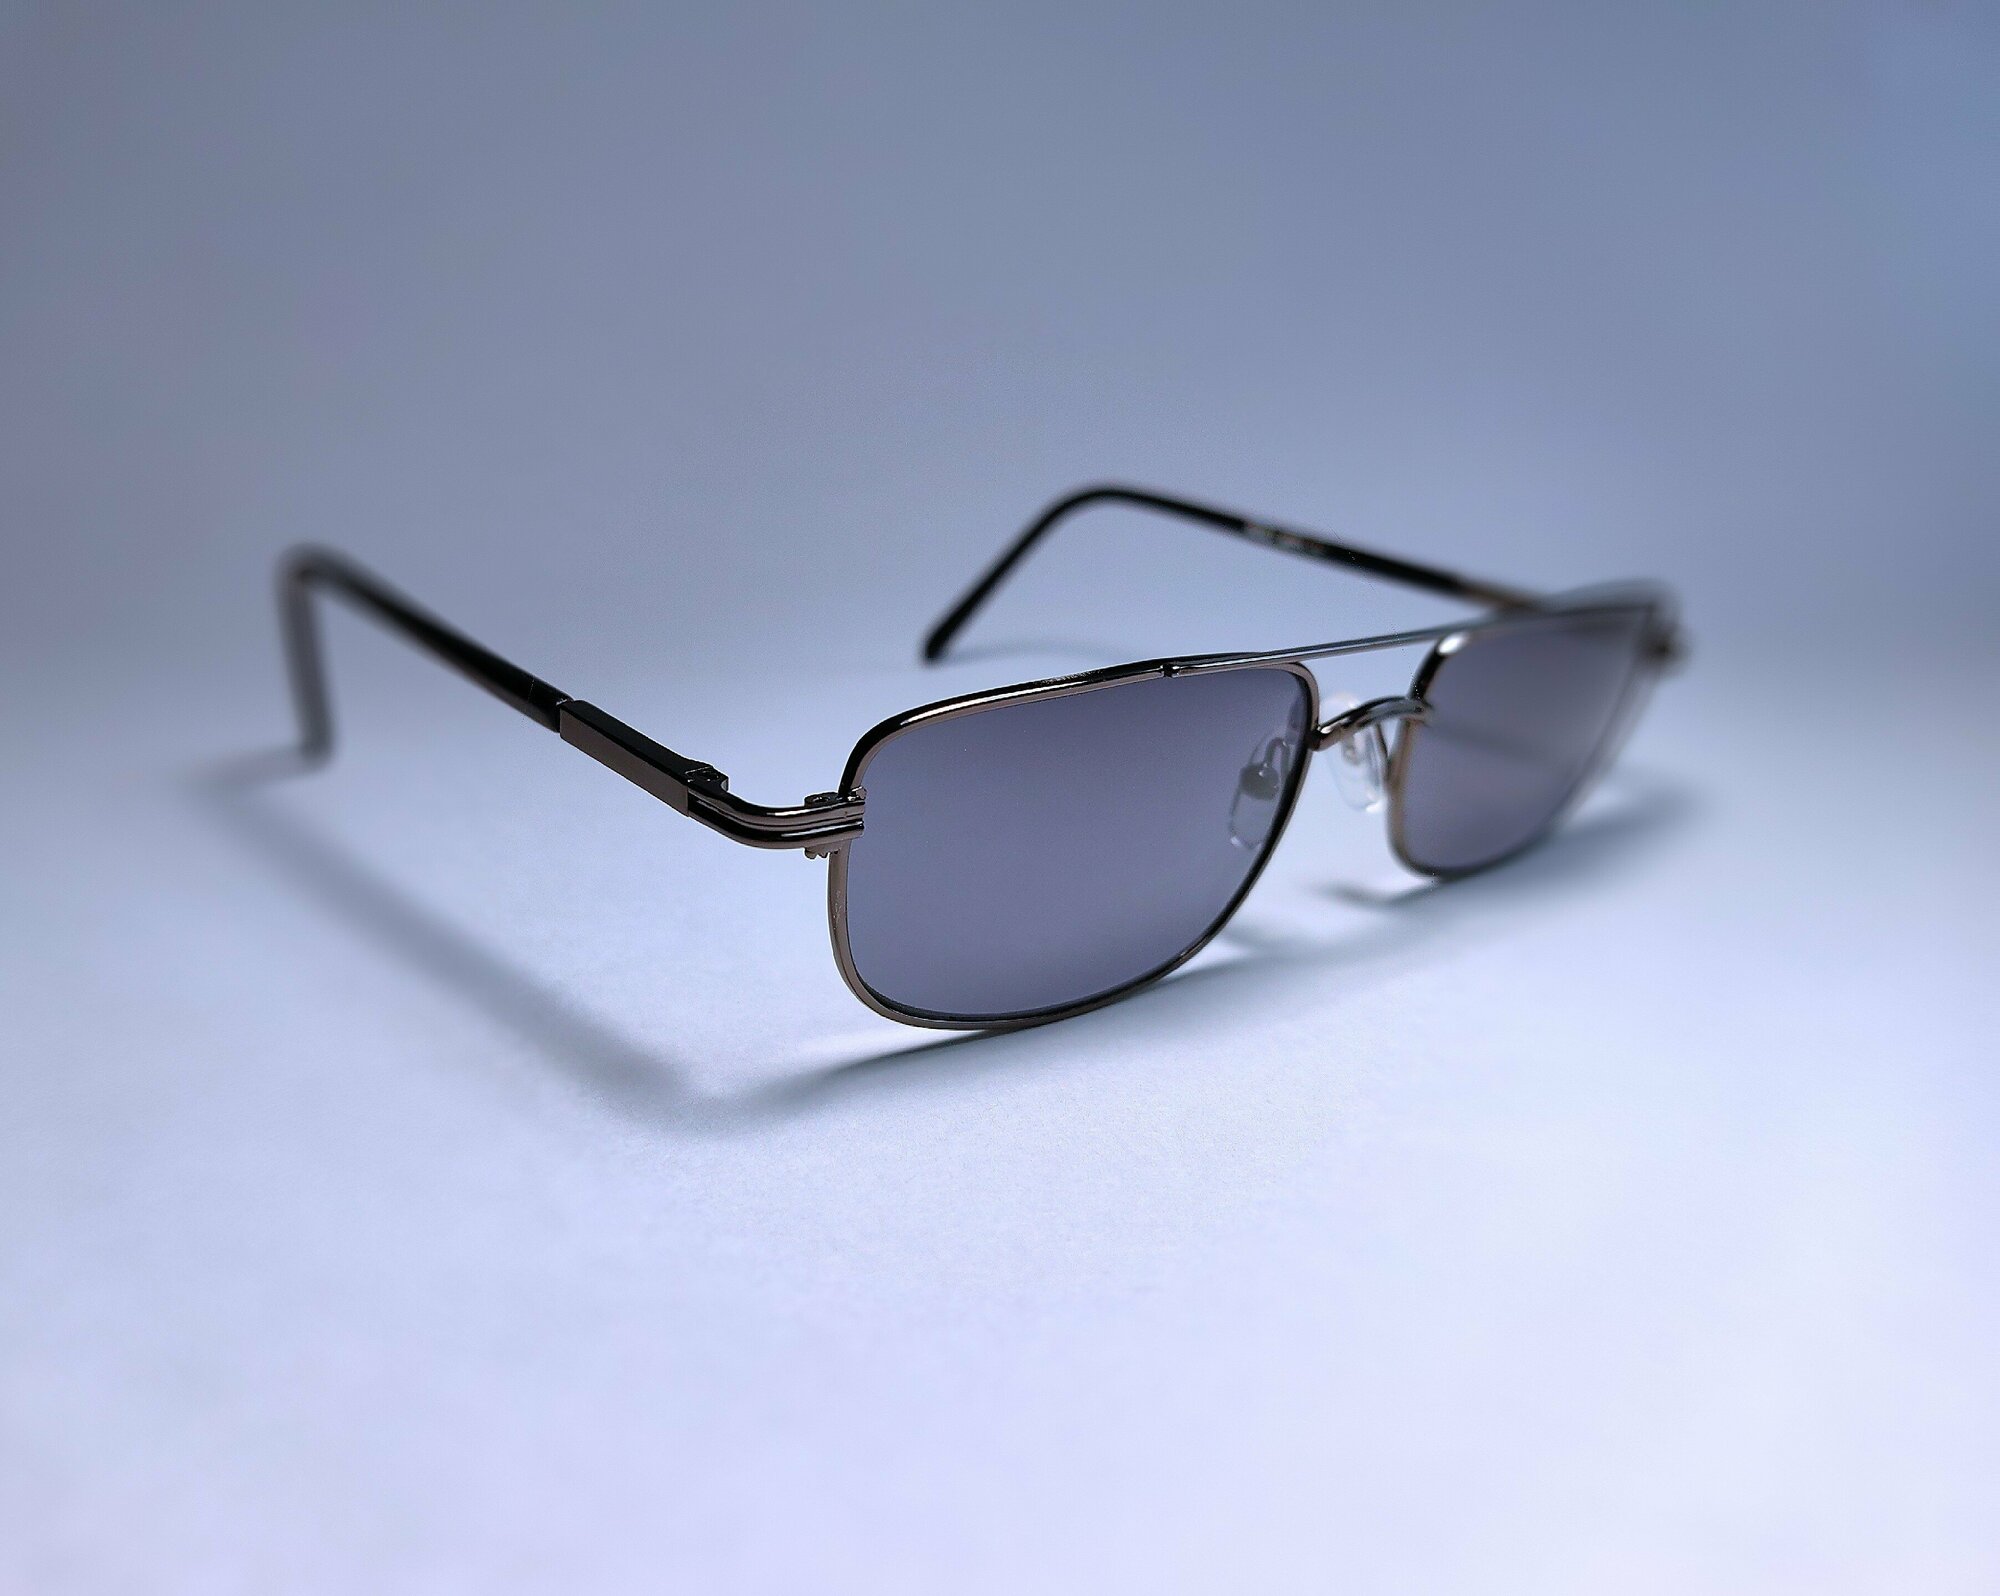 Готовые очки для зрения, стекло +1,75 (хамелеон) с фотохромными линзами, 62-64мм, очки для чтения, очки с диоптриями женские, мужские, оптика